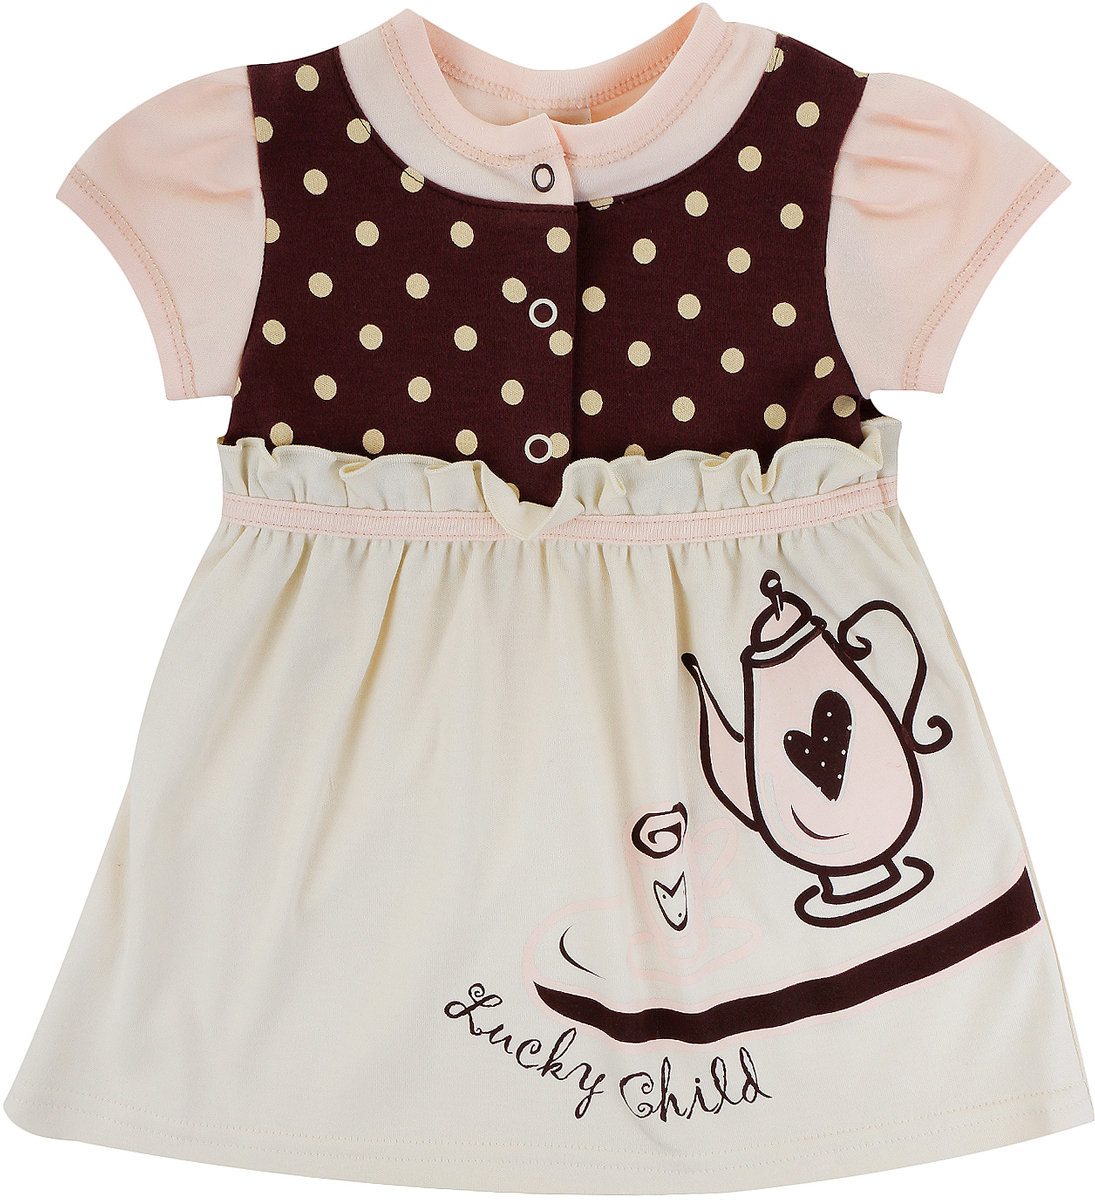 Платье для девочки Lucky Child Летнее кафе, цвет: бежевый, коричневый. 23-62. Размер 110/116